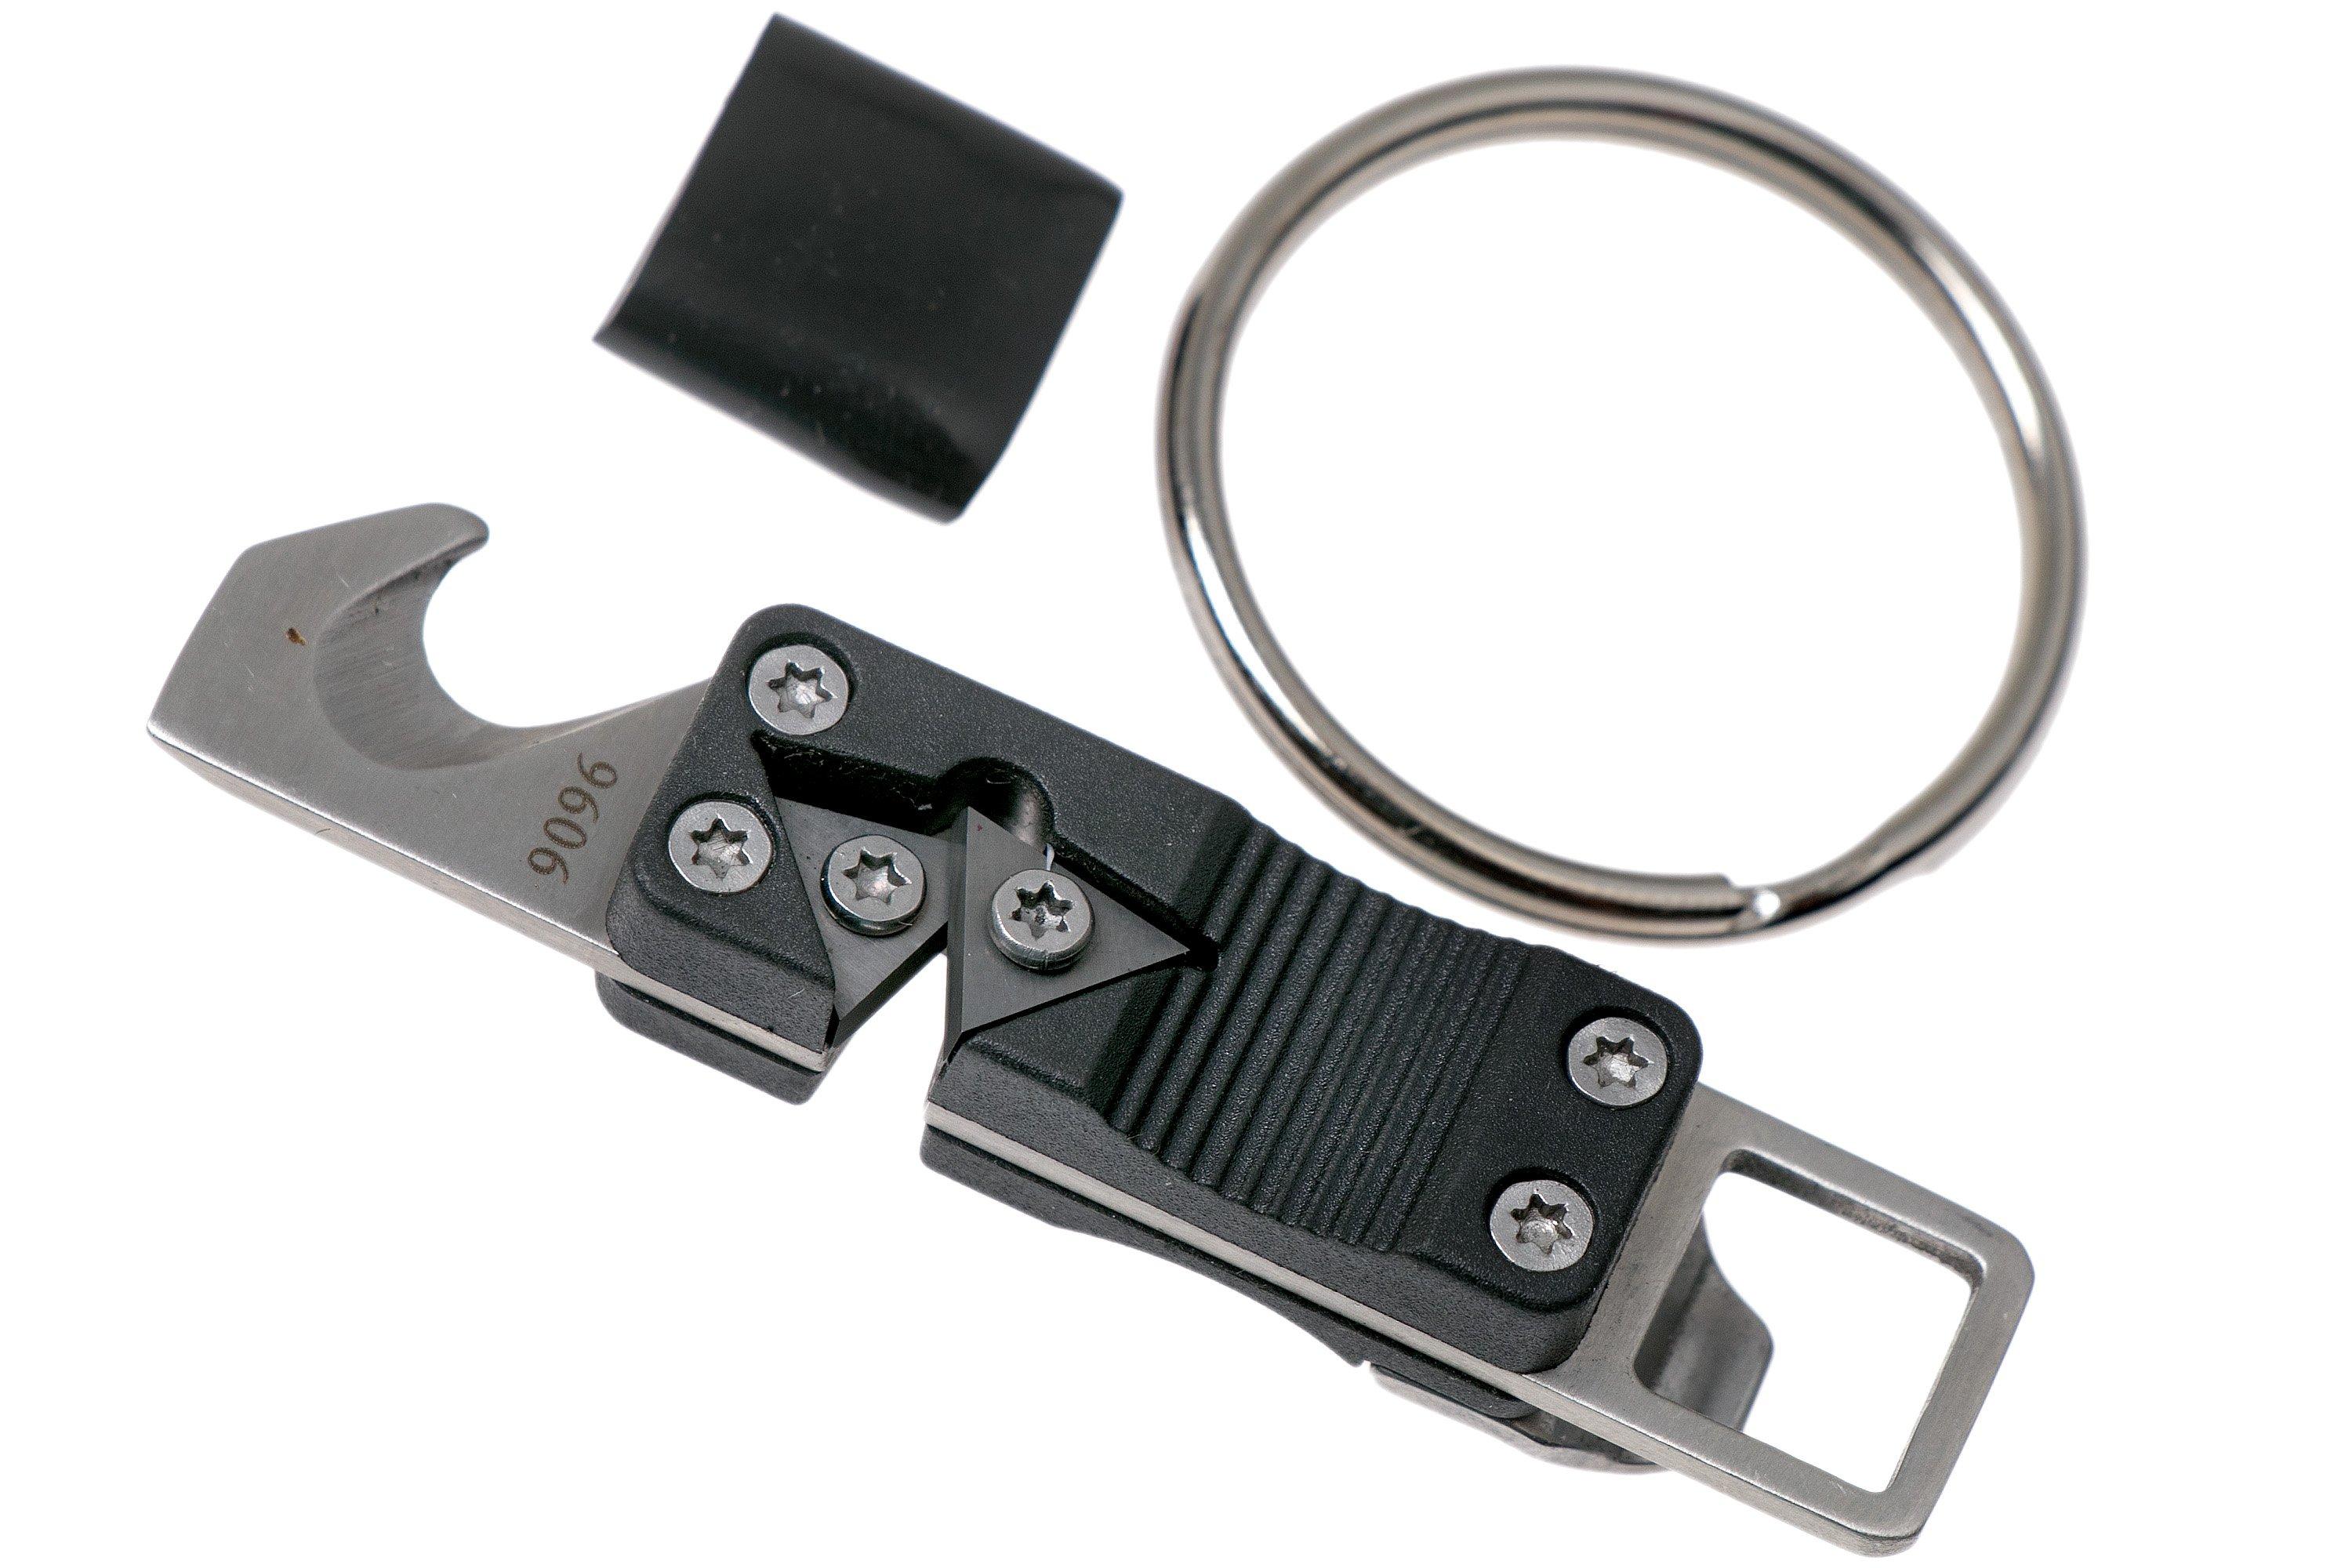 CRKT Micro Tool & Key Chain Sharpener: Multi-Tool for Everyday Carry,  Seatbelt Cutter, Knife Sharpener, Bottle Opener 9096 